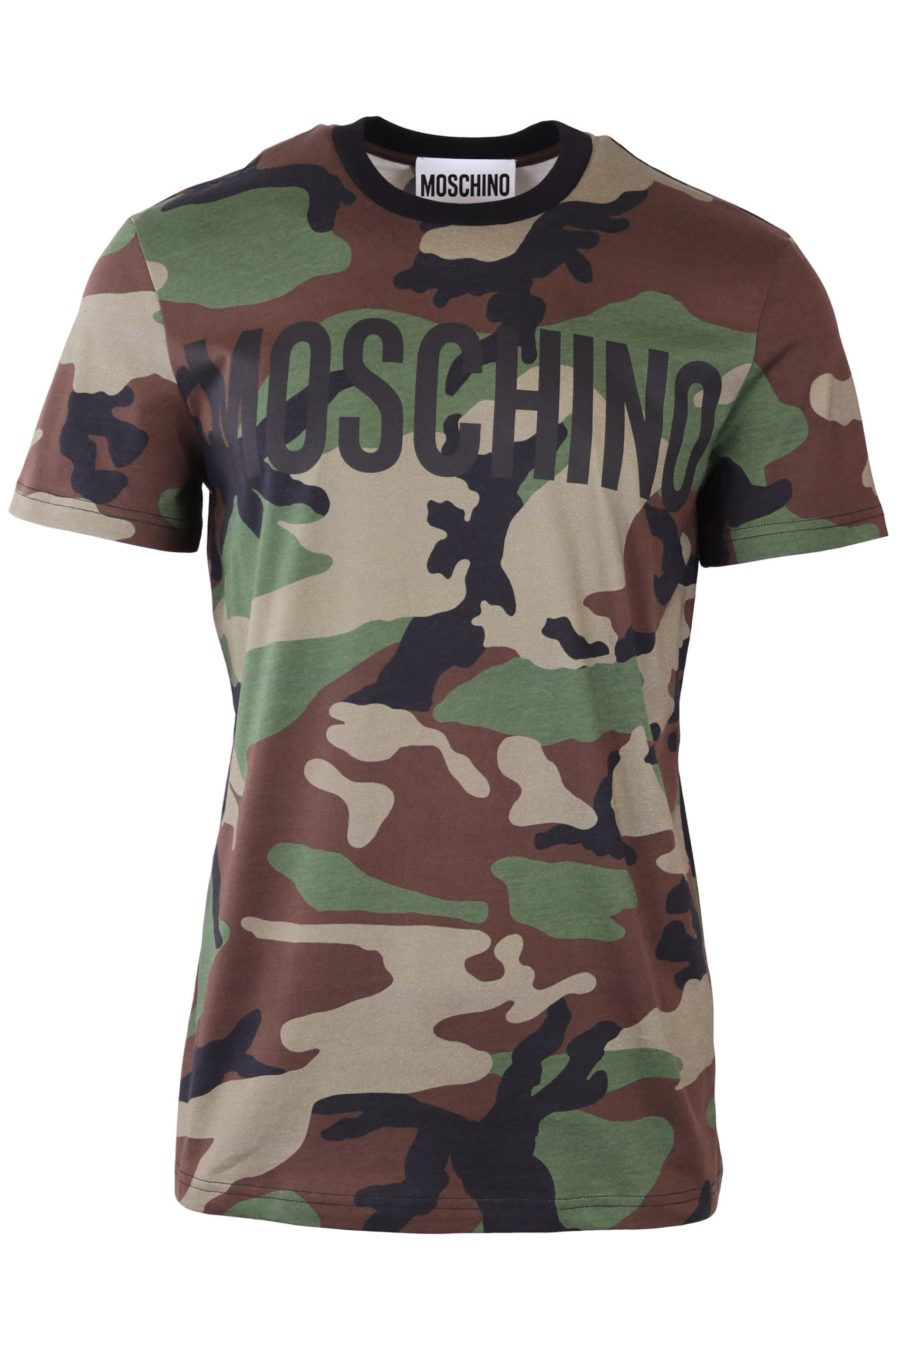 Moschino Couture Militär-T-Shirt mit Logo - IMG 6538 skaliert